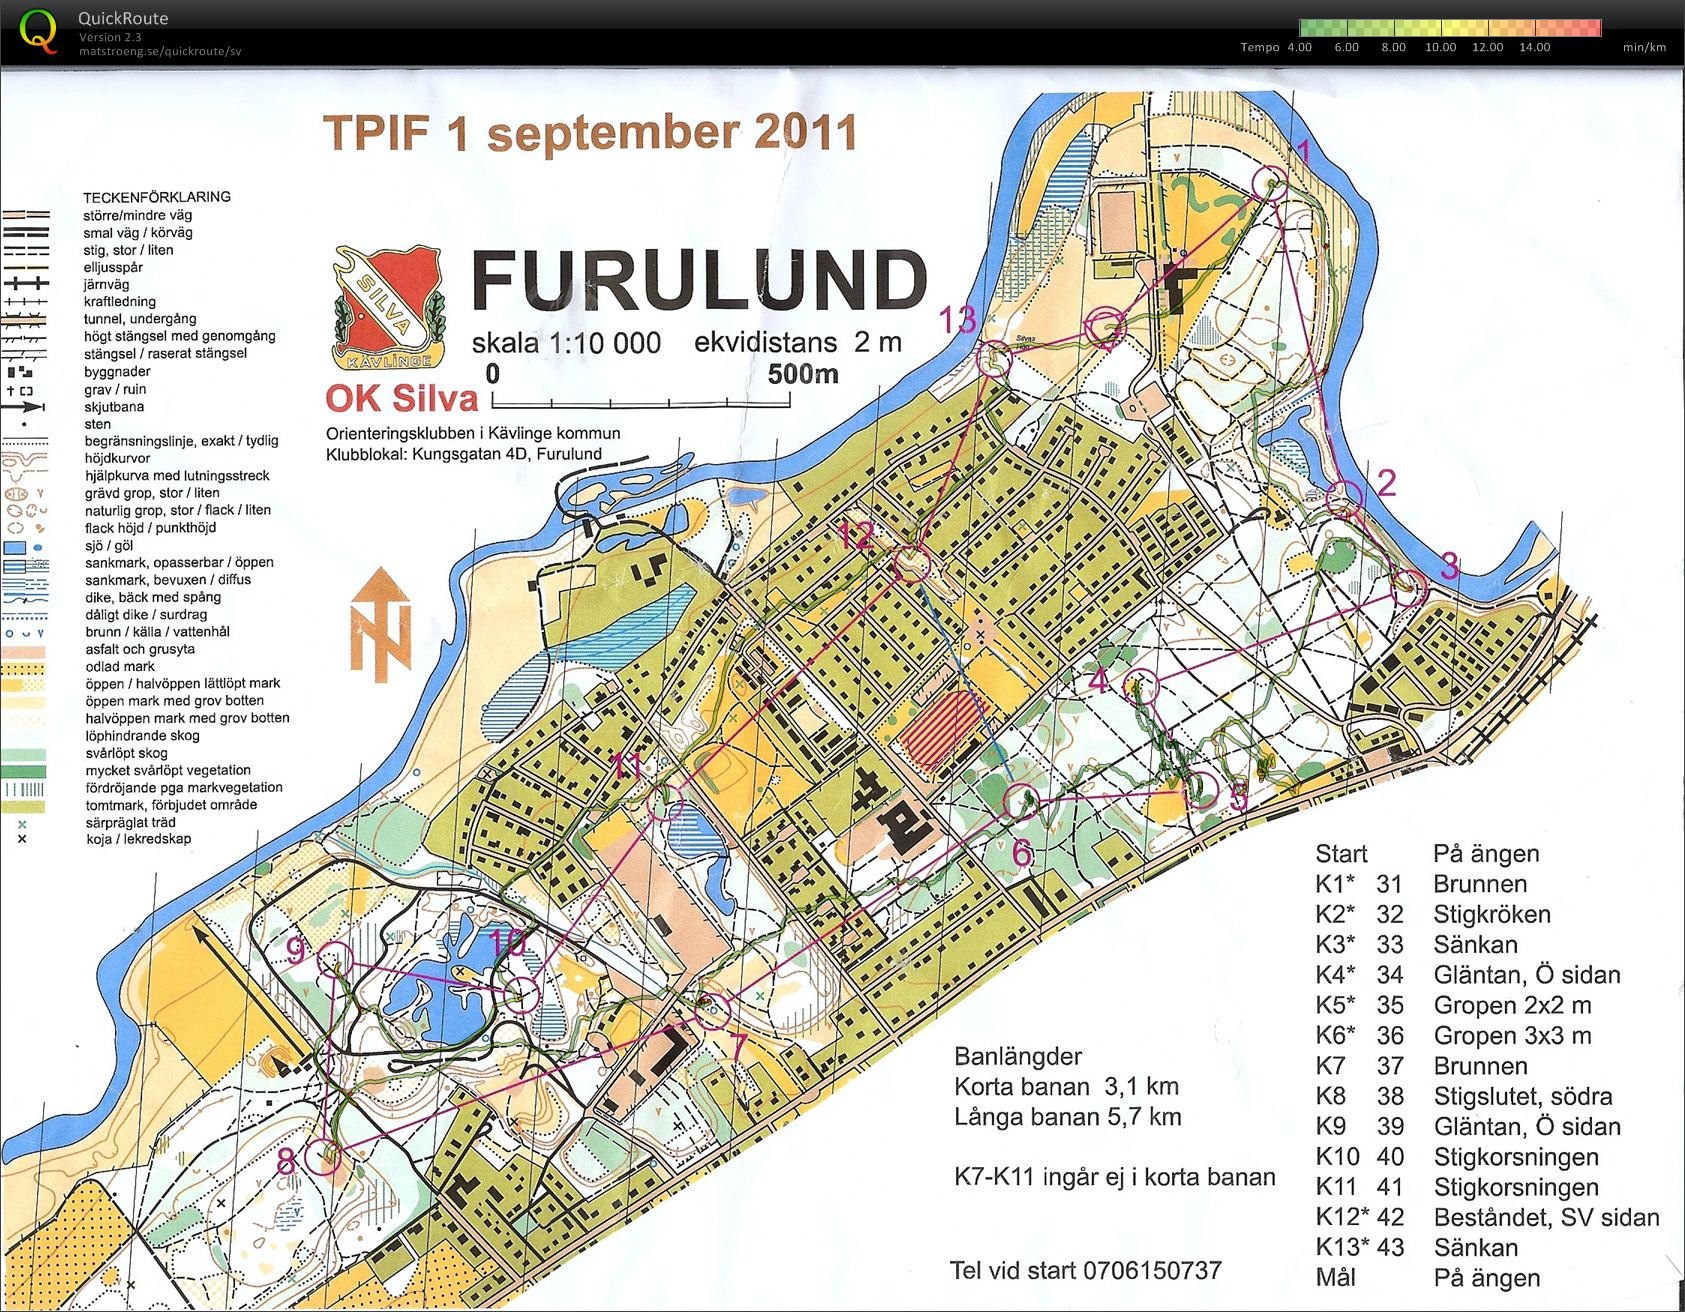 TP OL Furulund (31-08-2011)